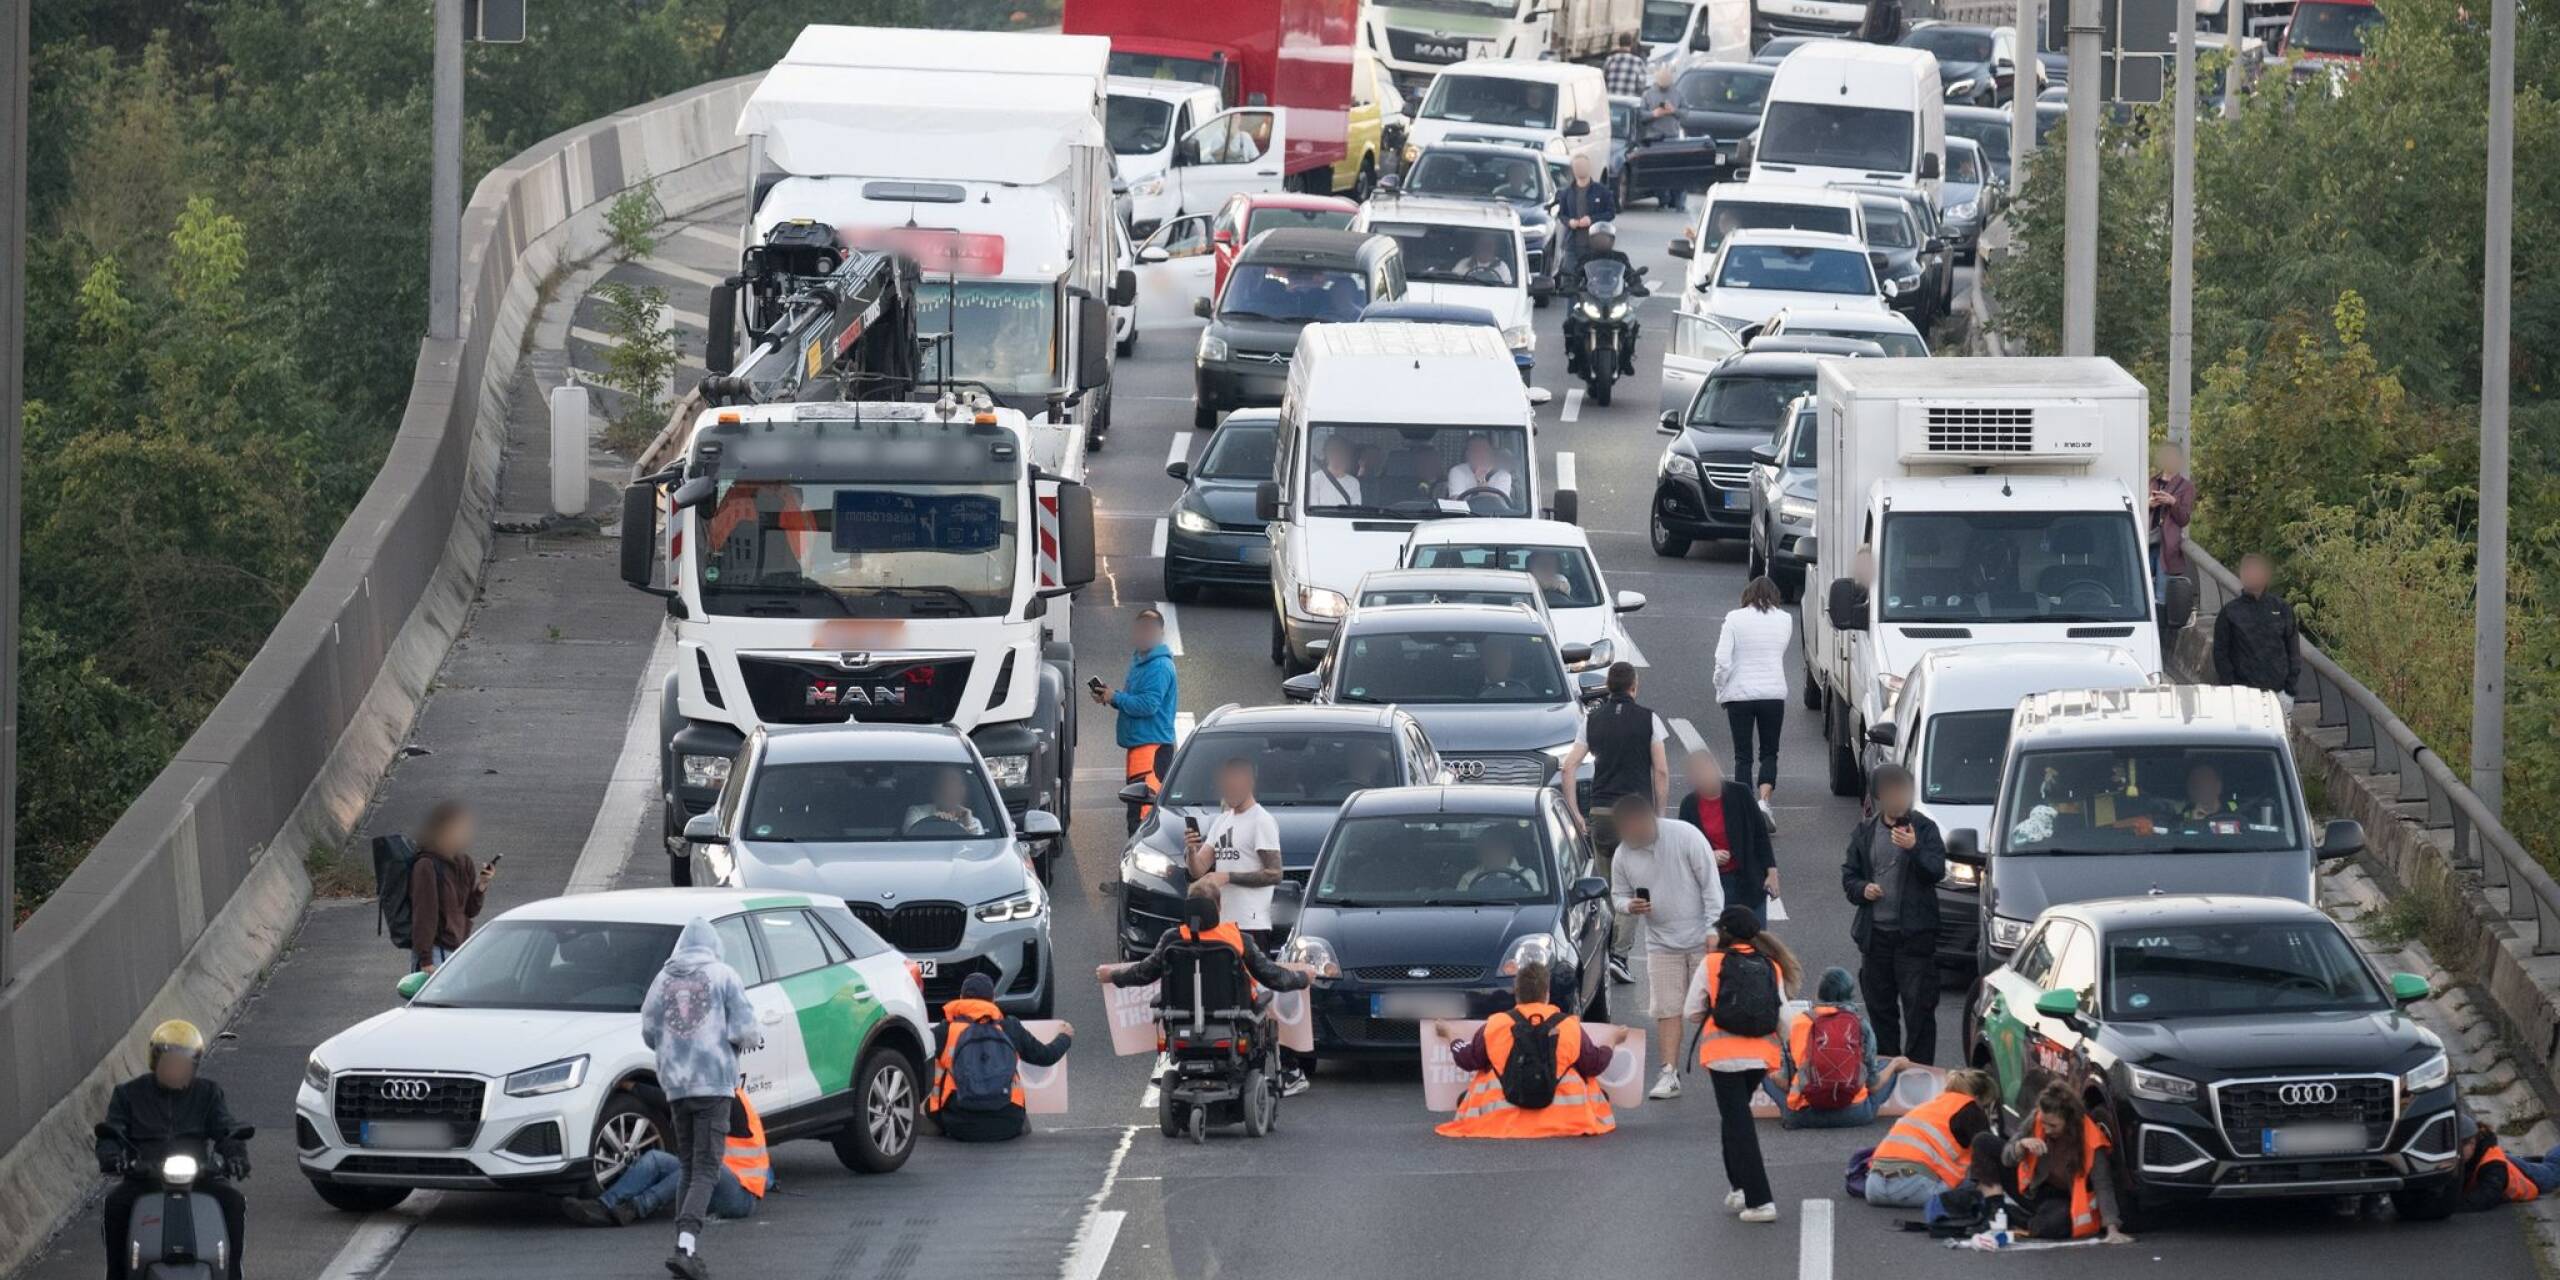 Orangener Protest: Aktivisten der Klimaschutzgruppe Letzte Generation blockieren den Verkehr auf der A100 in Berlin.